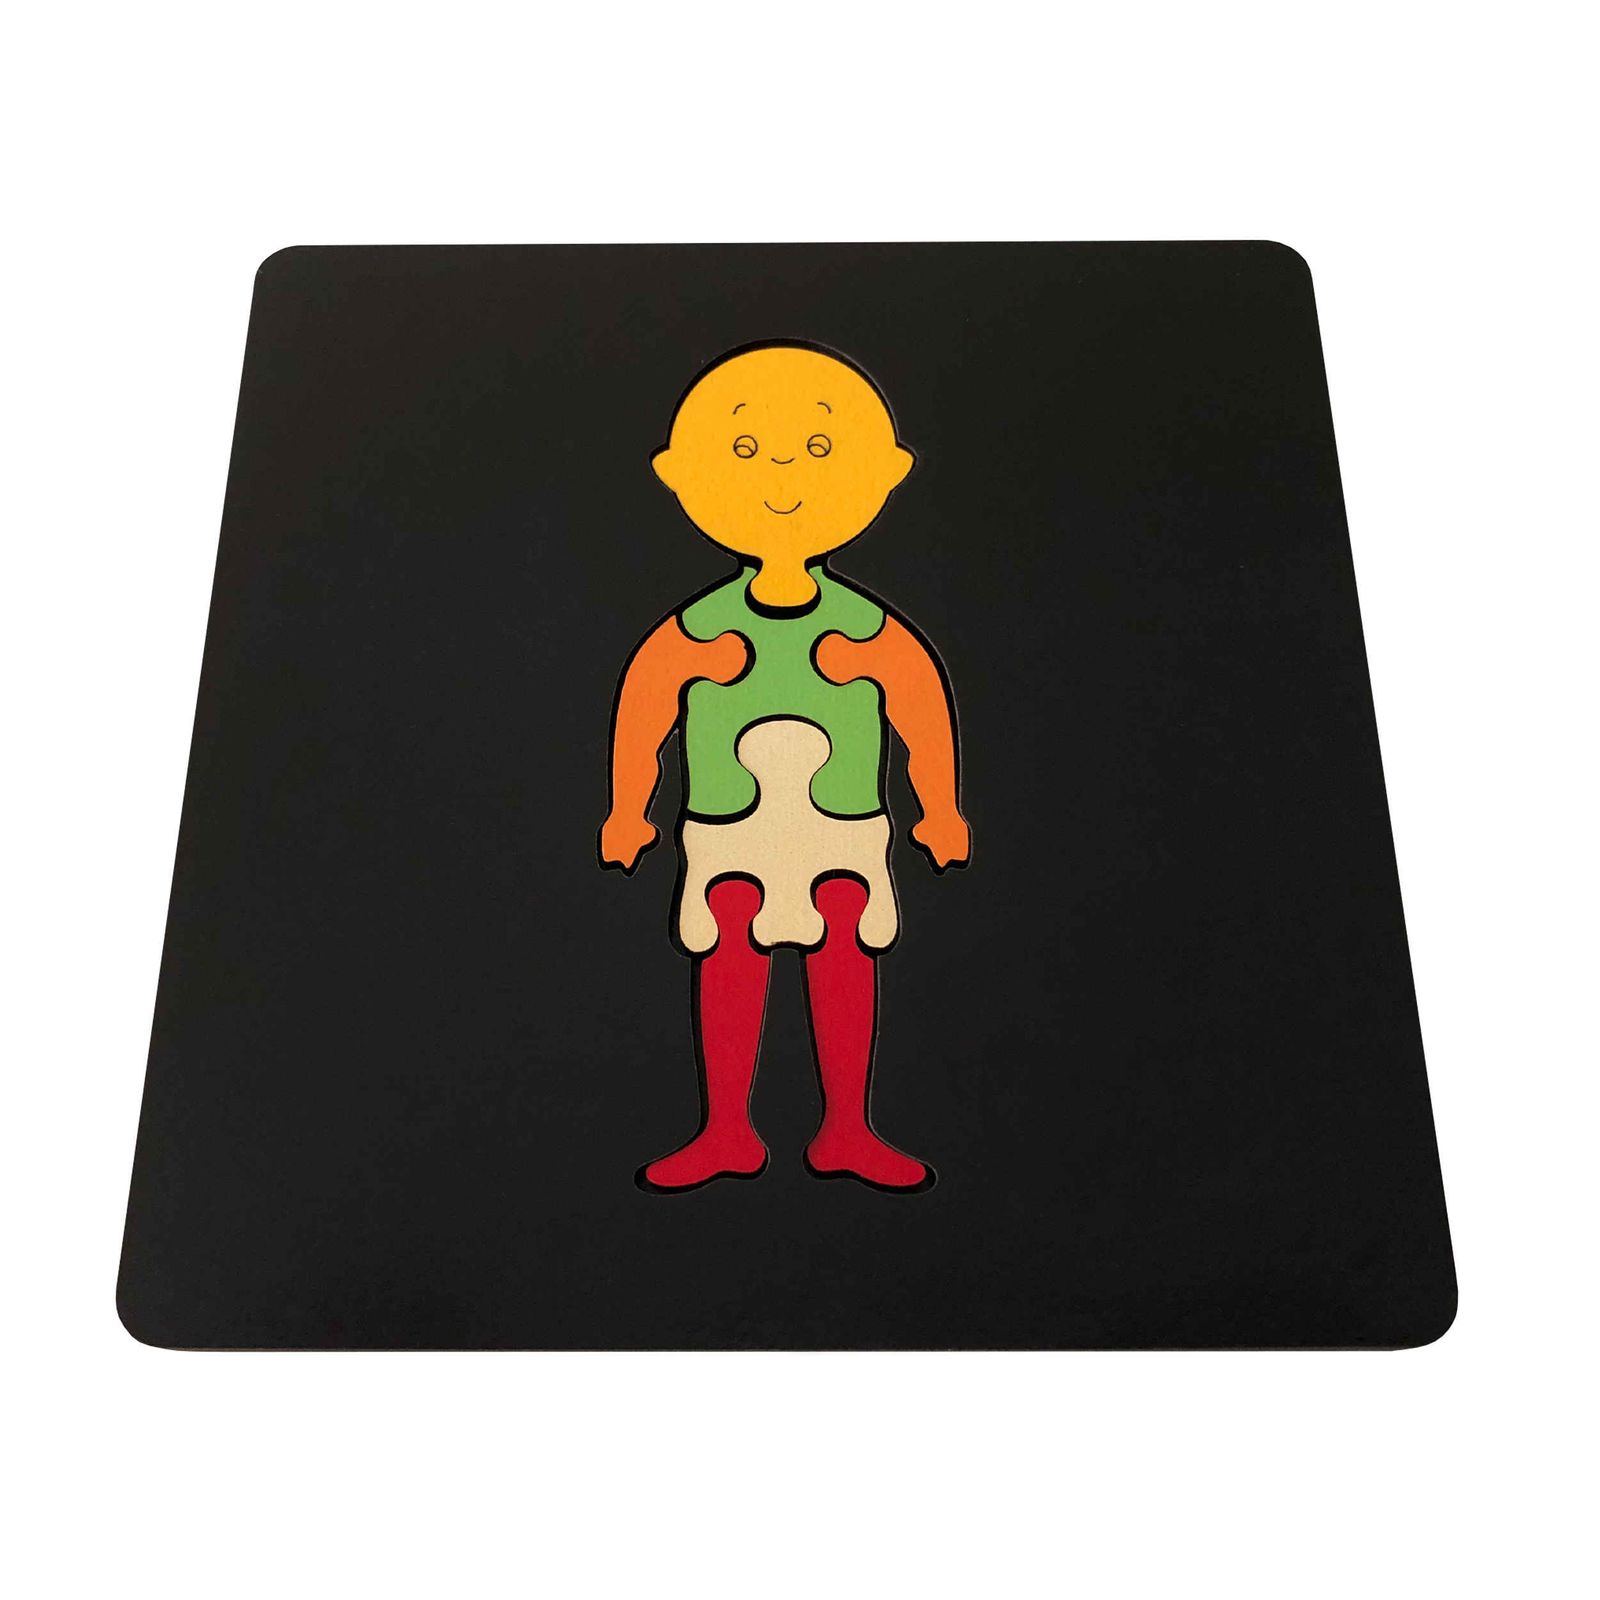 بازی آموزشی مستر راد مدل بدن انسان کد کازیوه 021 -  - 1